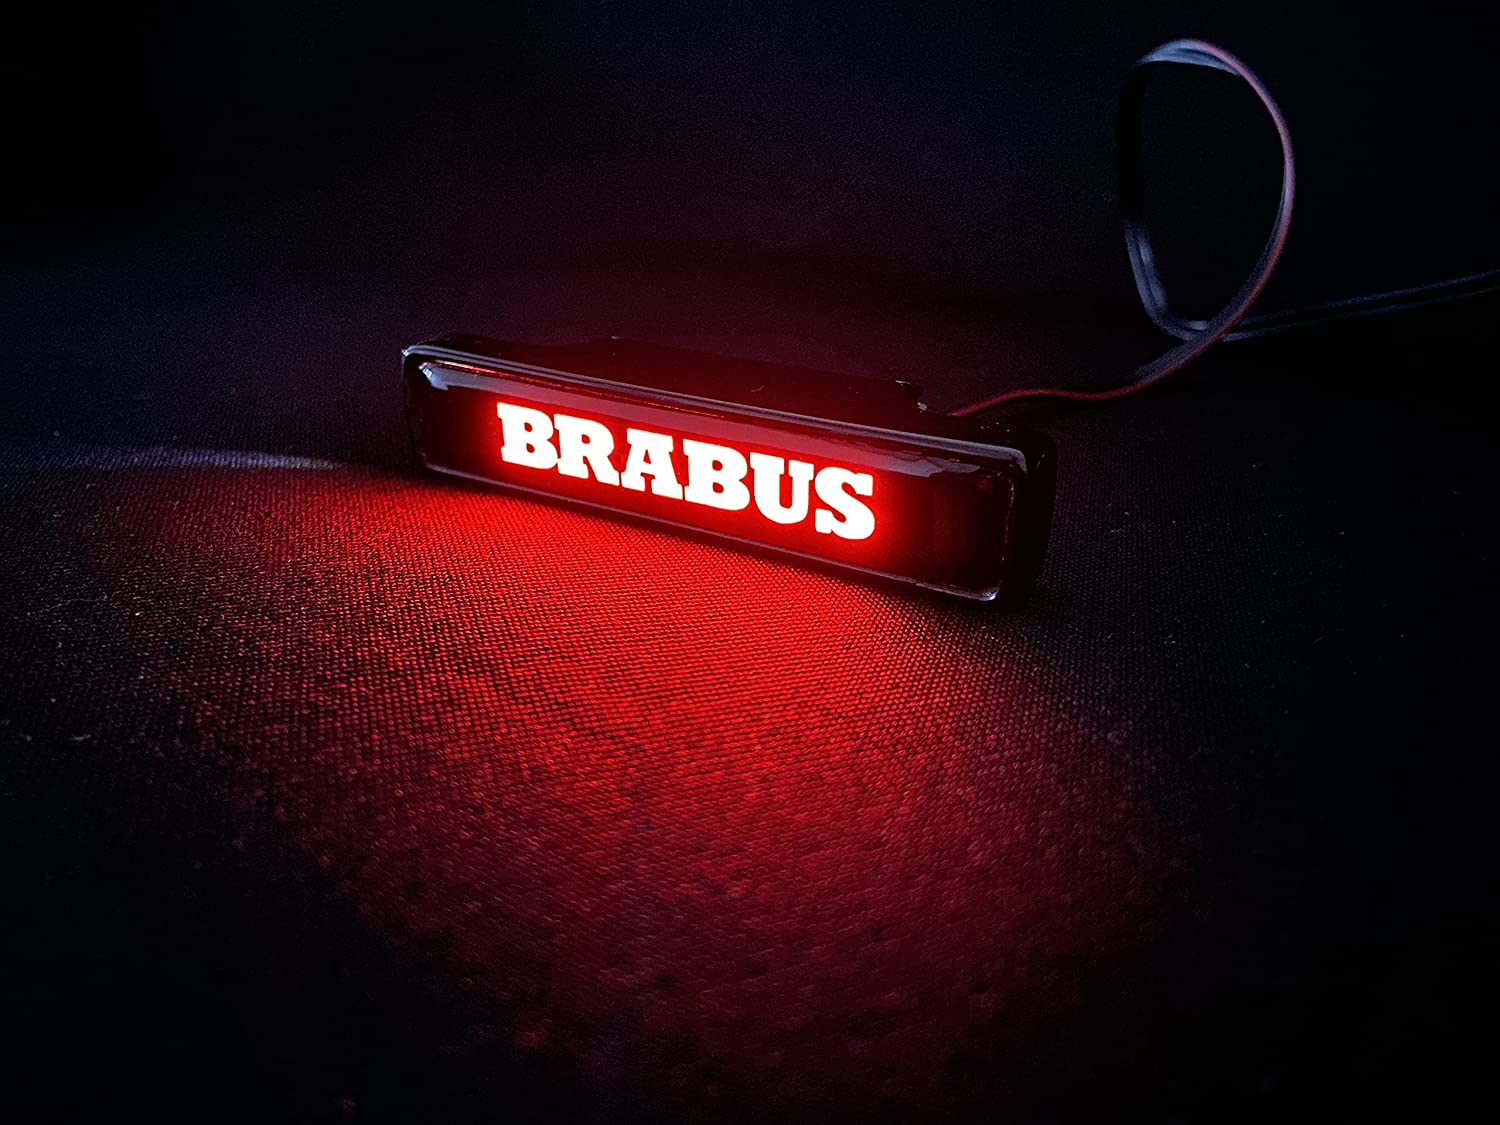 Brabus style Front Grille Red LED Illuminated Logo Badge Emblem